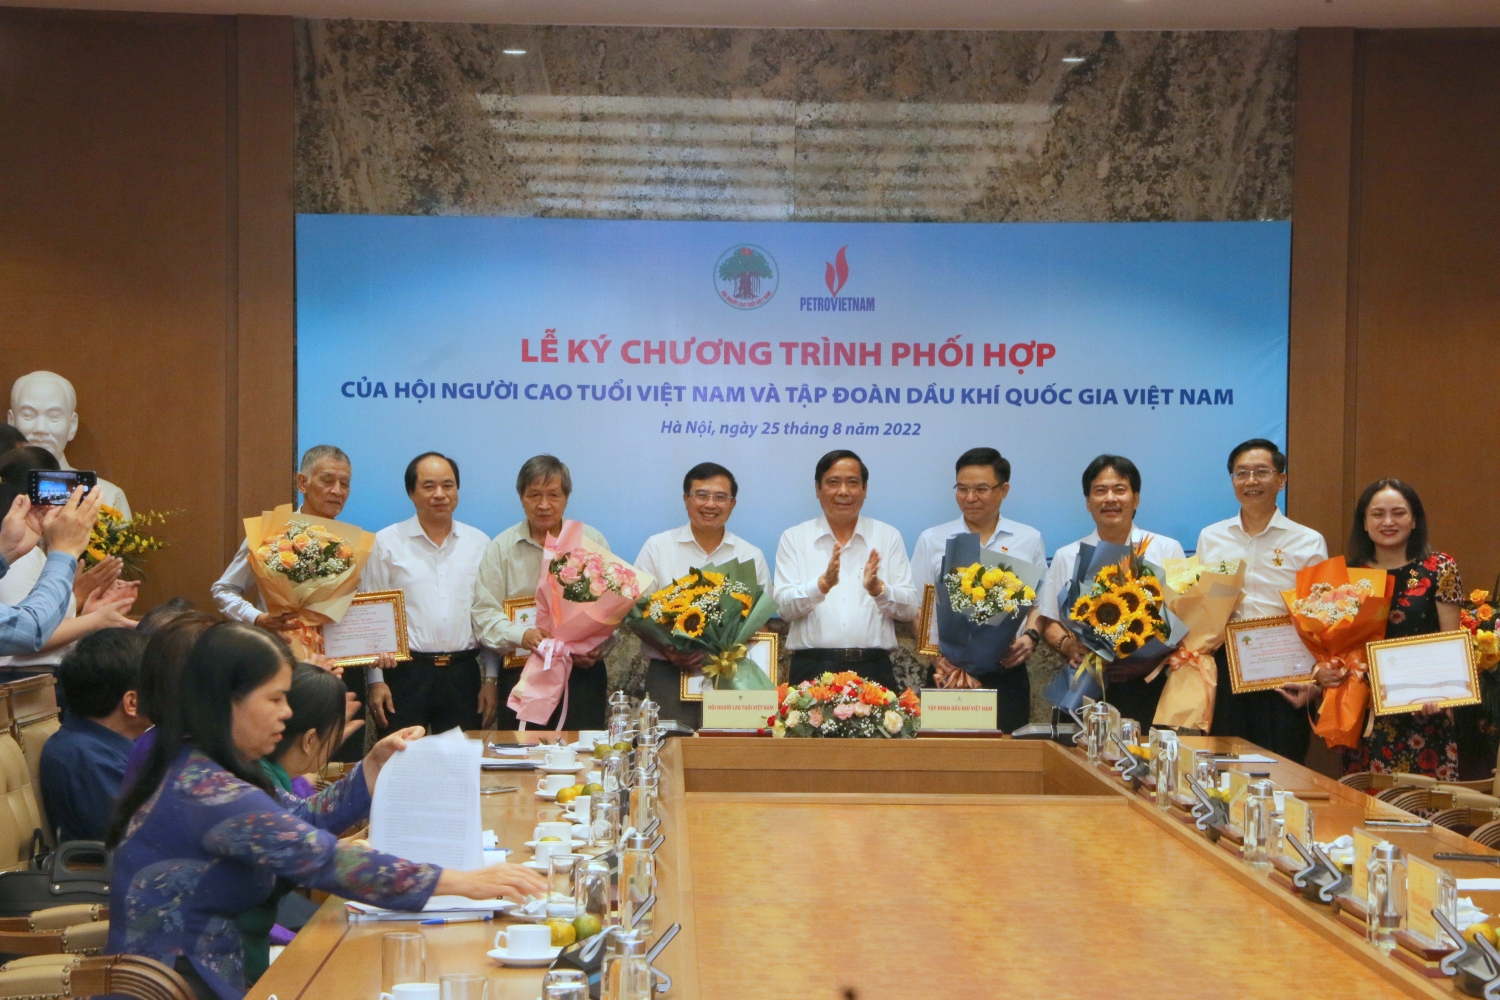 Petrovietnam ký chương trình phối hợp với Hội Người cao tuổi Việt Nam